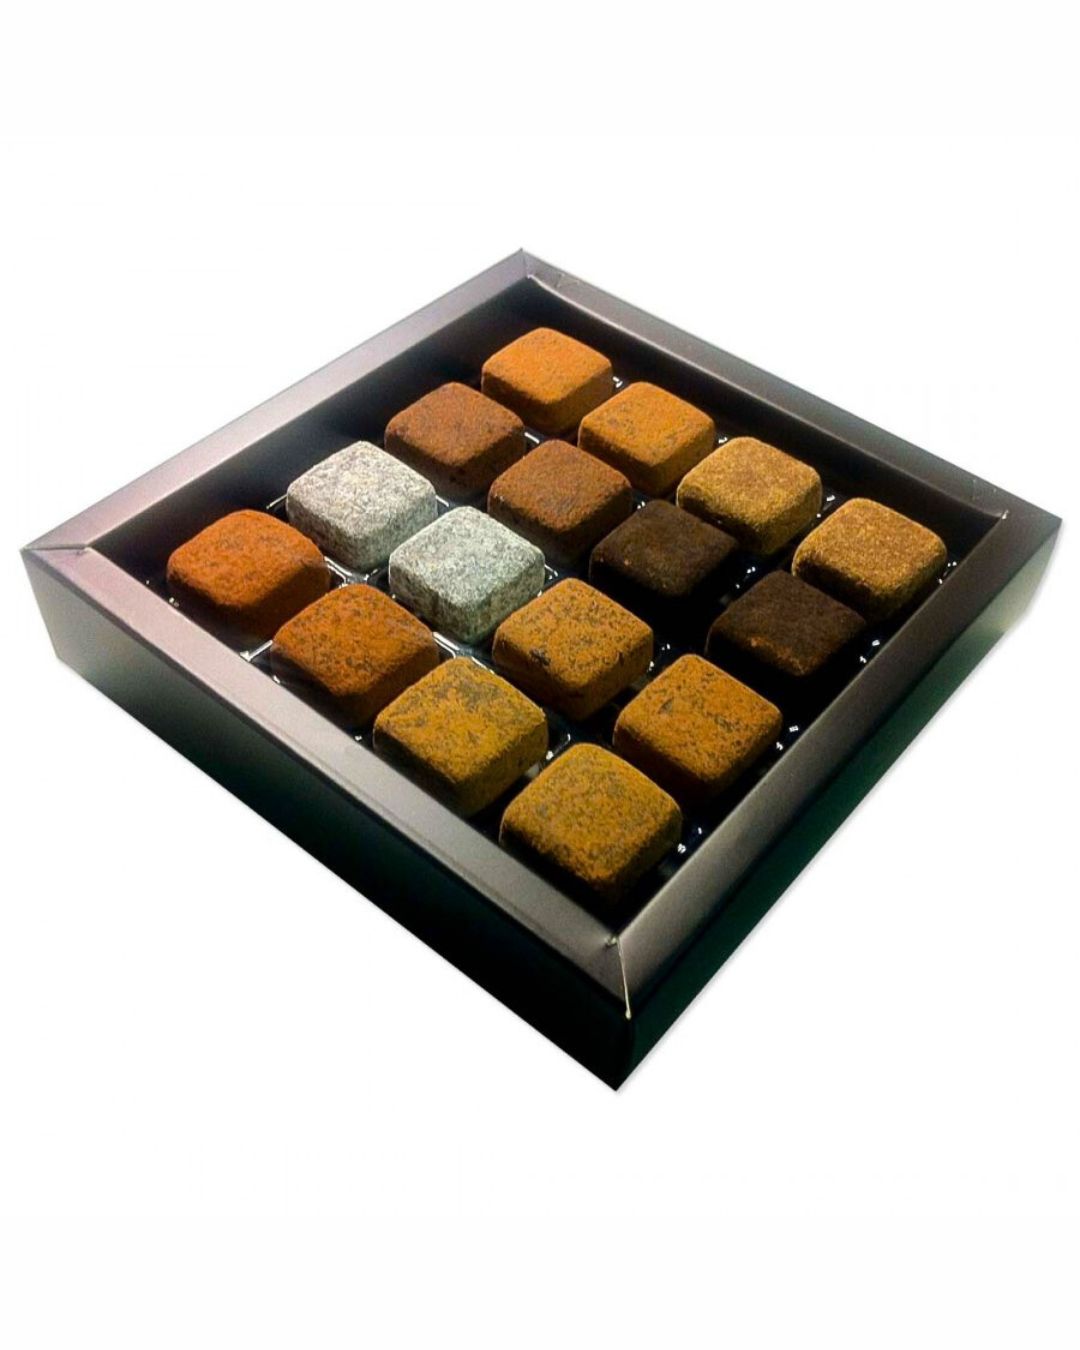 Caixa Luxo Prime com berço marrom - 16 unid